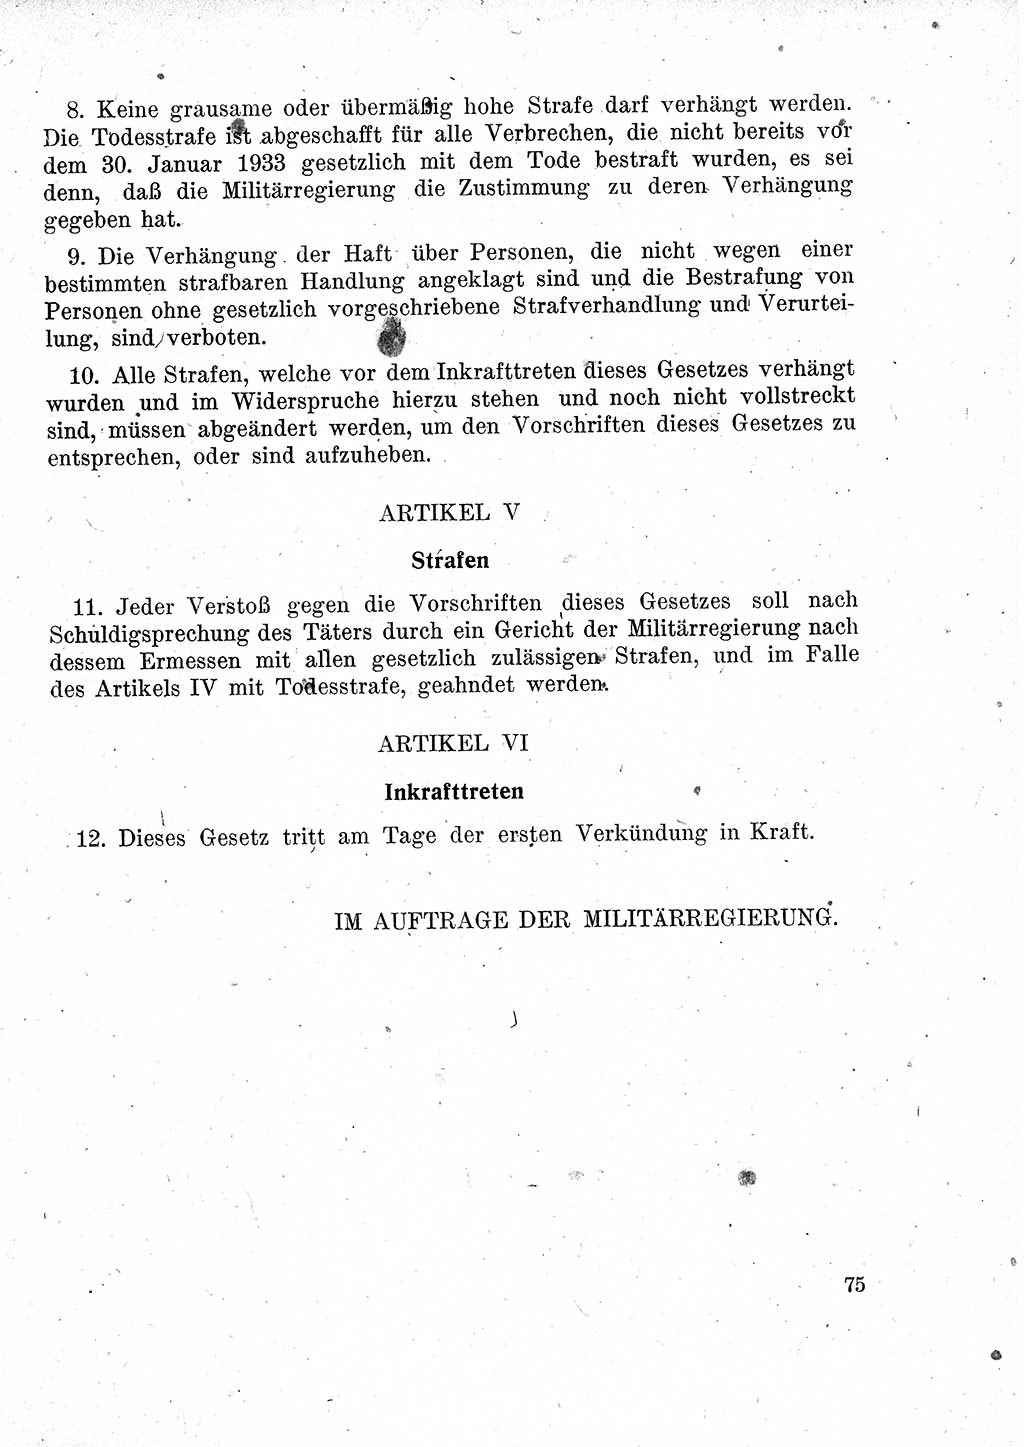 Das Recht der Besatzungsmacht (Deutschland), Proklamationen, Deklerationen, Verordnungen, Gesetze und Bekanntmachungen 1947, Seite 75 (R. Bes. Dtl. 1947, S. 75)